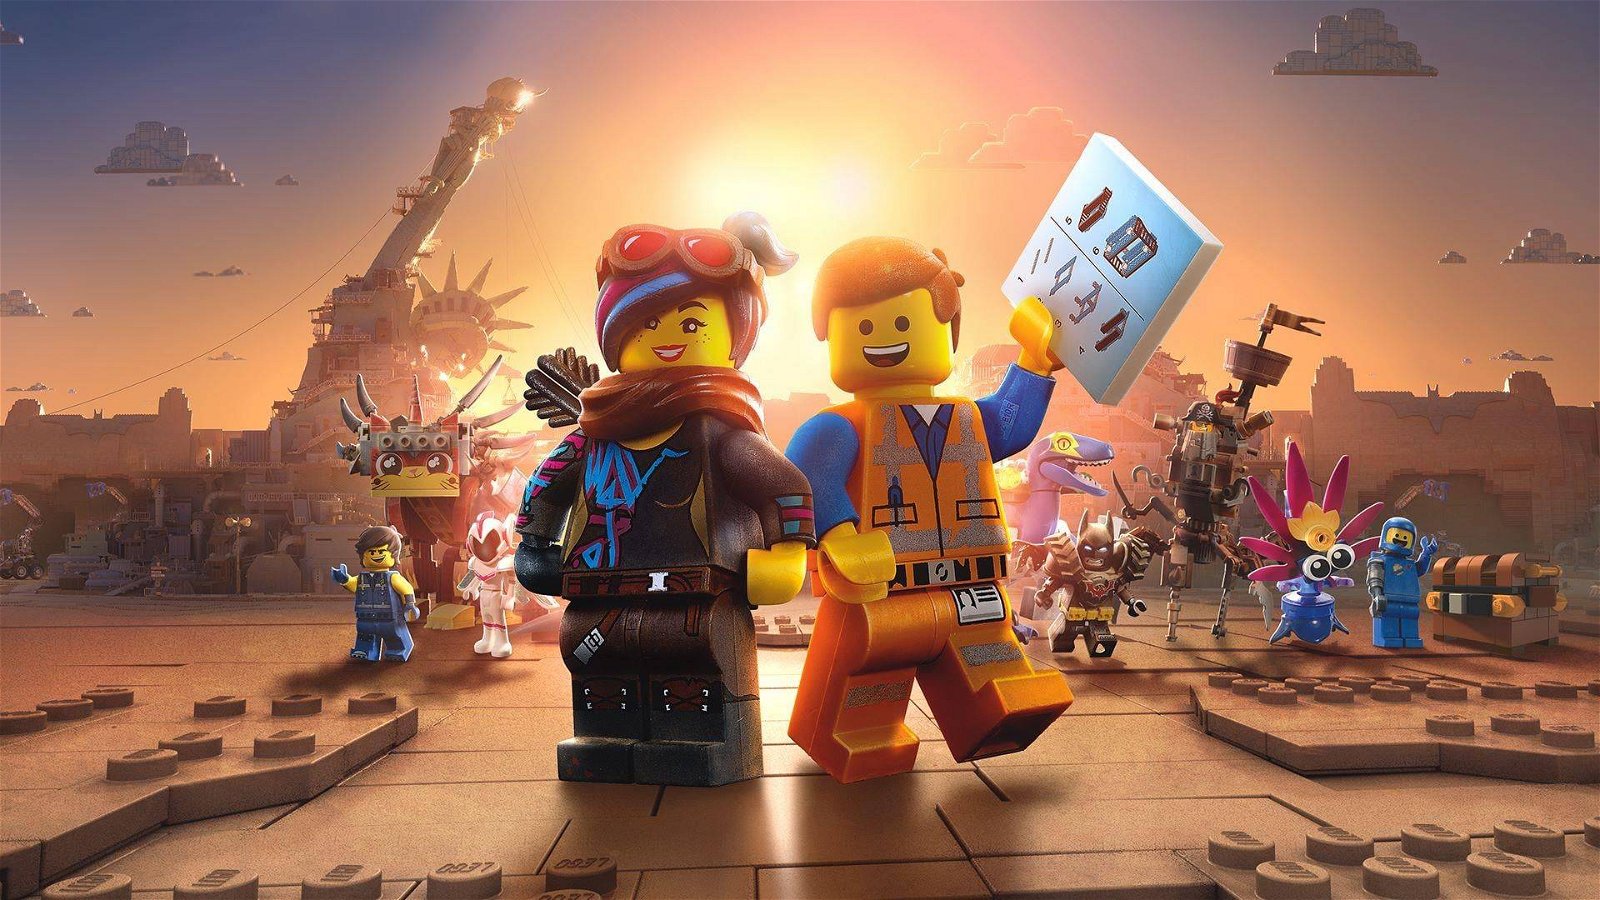 Immagine di LEGO: un nuovo studio vuole creare giochi artistici